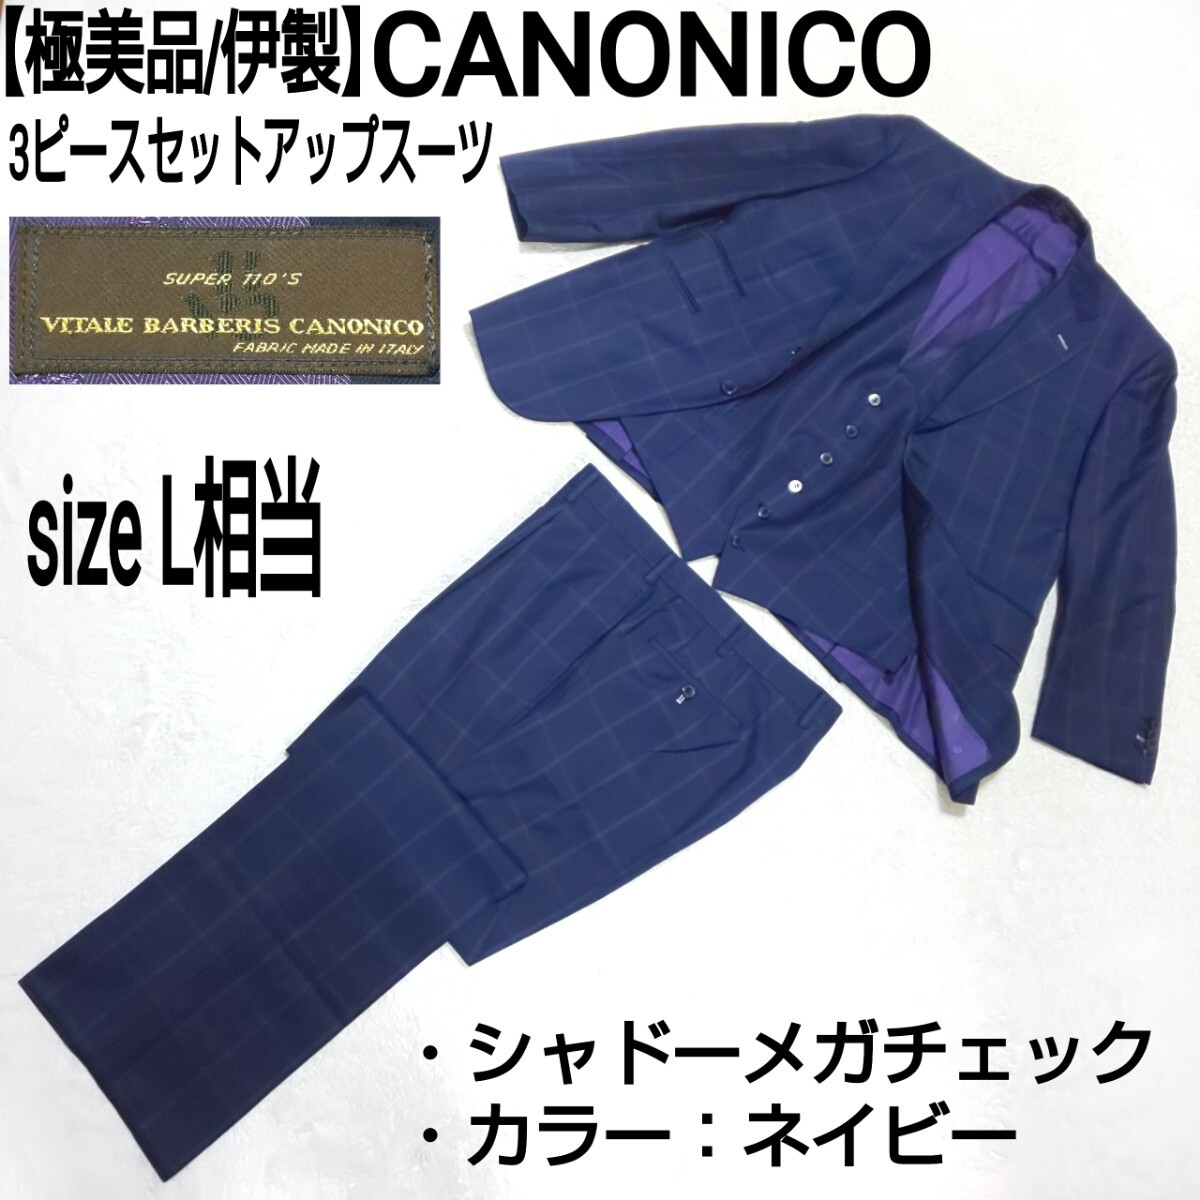 【極美品/伊製】CANONICO カノニコ 3ピースセットアップスーツ テーラードジャケット ベスト センタープレスパンツ シャドーメガチェック